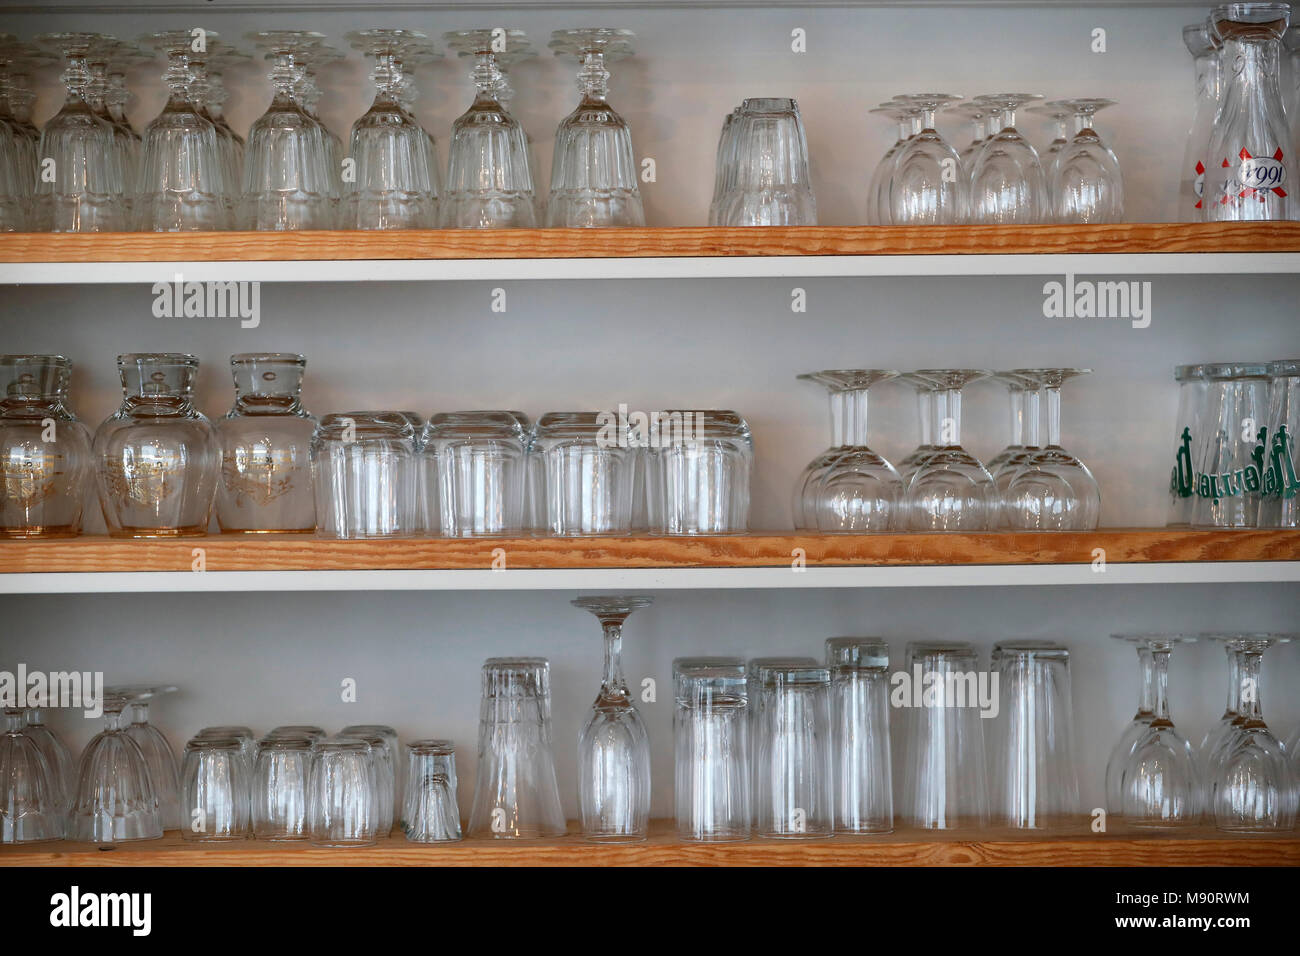 Différents verres empilés sur des étagères bar Photo Stock - Alamy